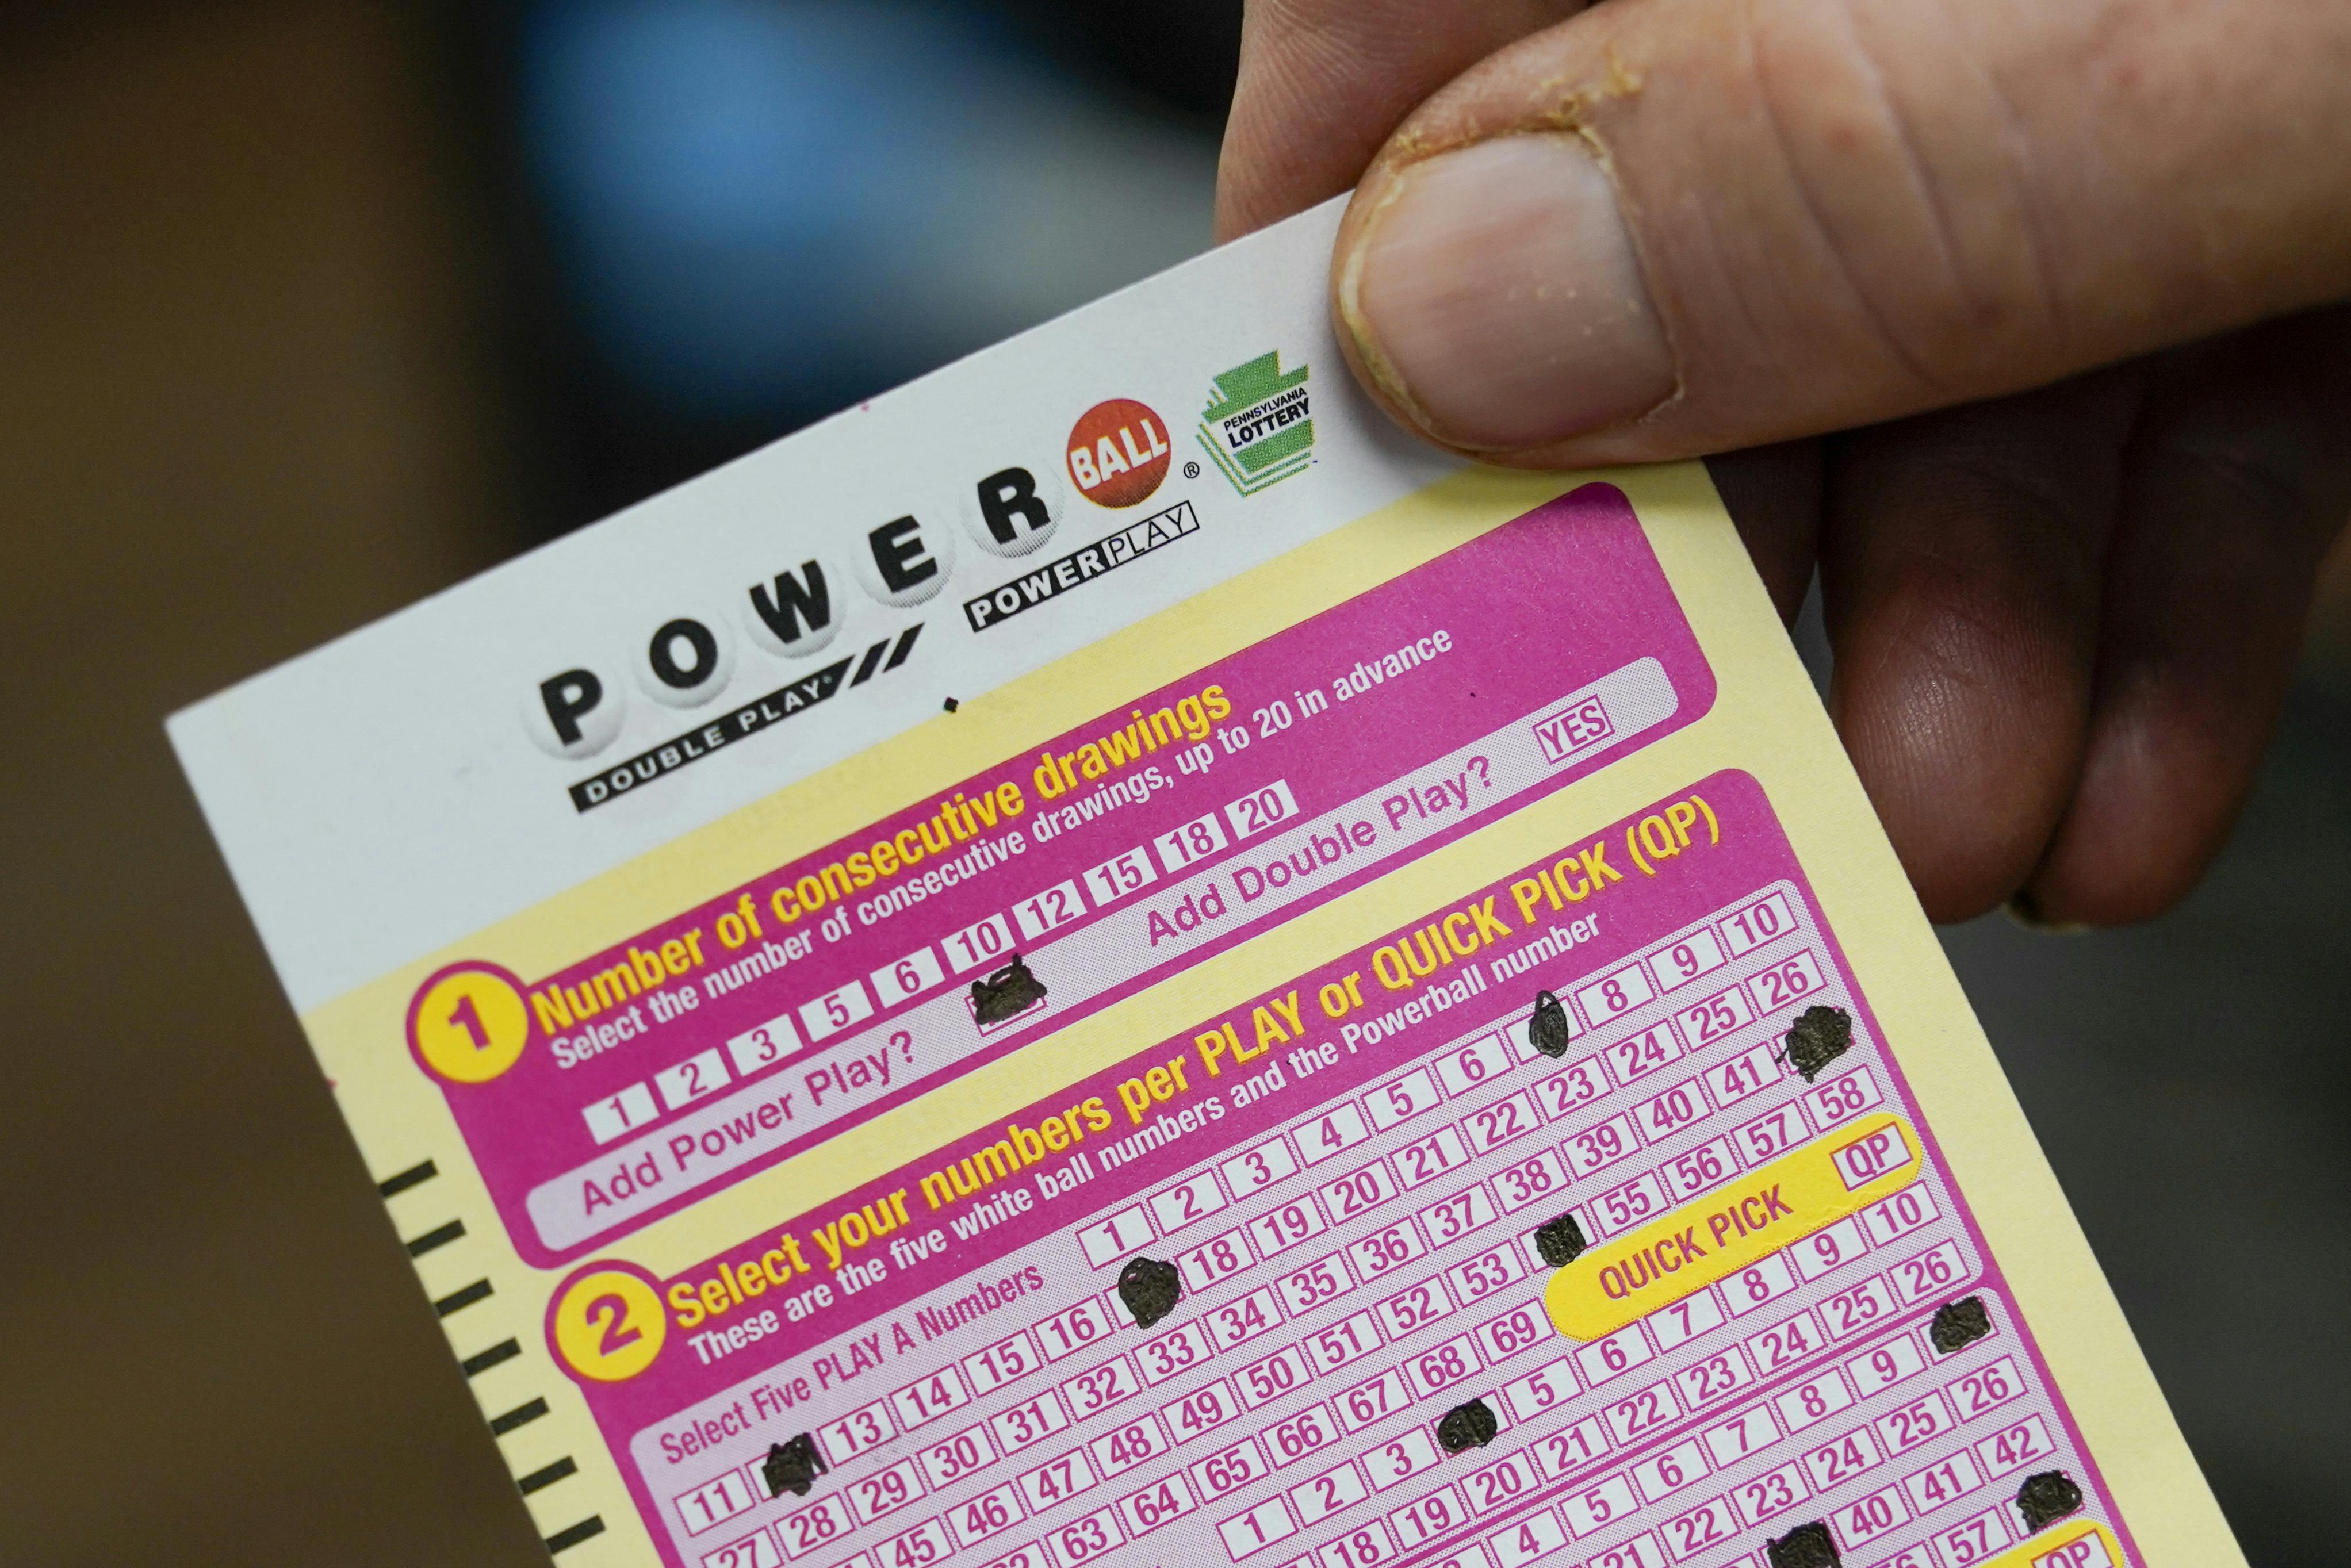 Powerball er et amerikansk lotterispil, og tirsdag indkasserede en heldig spiller den helt store jackpot. nbsp;